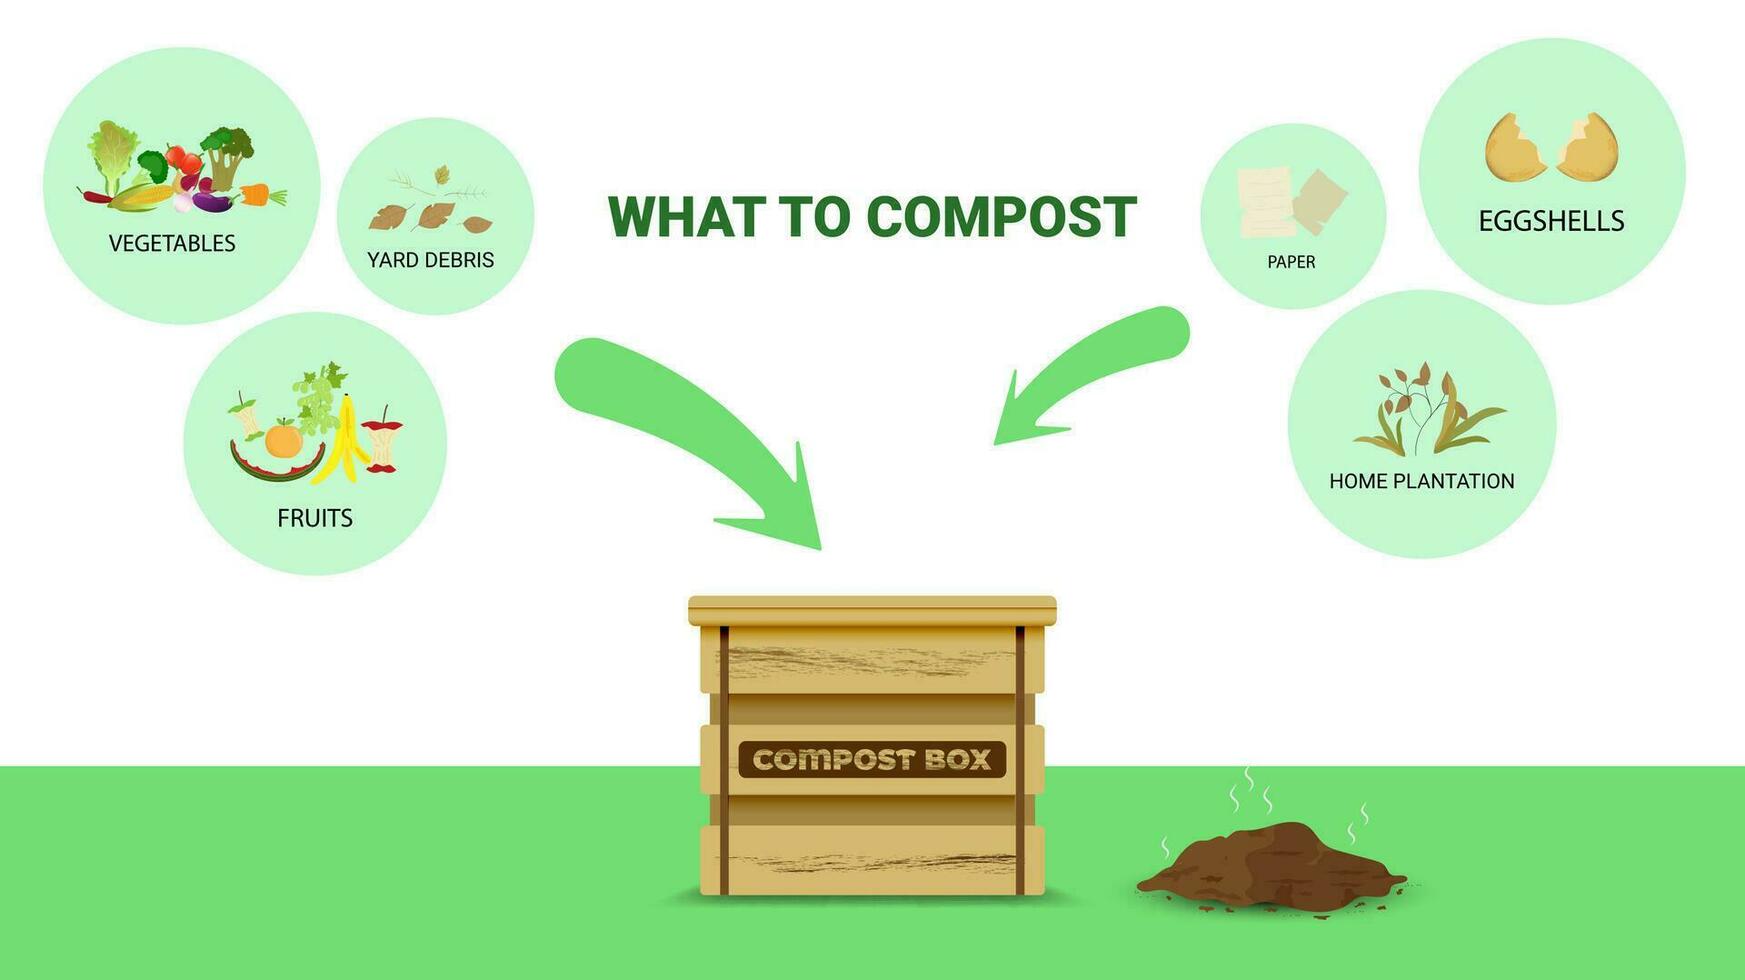 kompostering begrepp för organisk gödselmedel eller avfall förvaltning för kompost. vektor illustration.